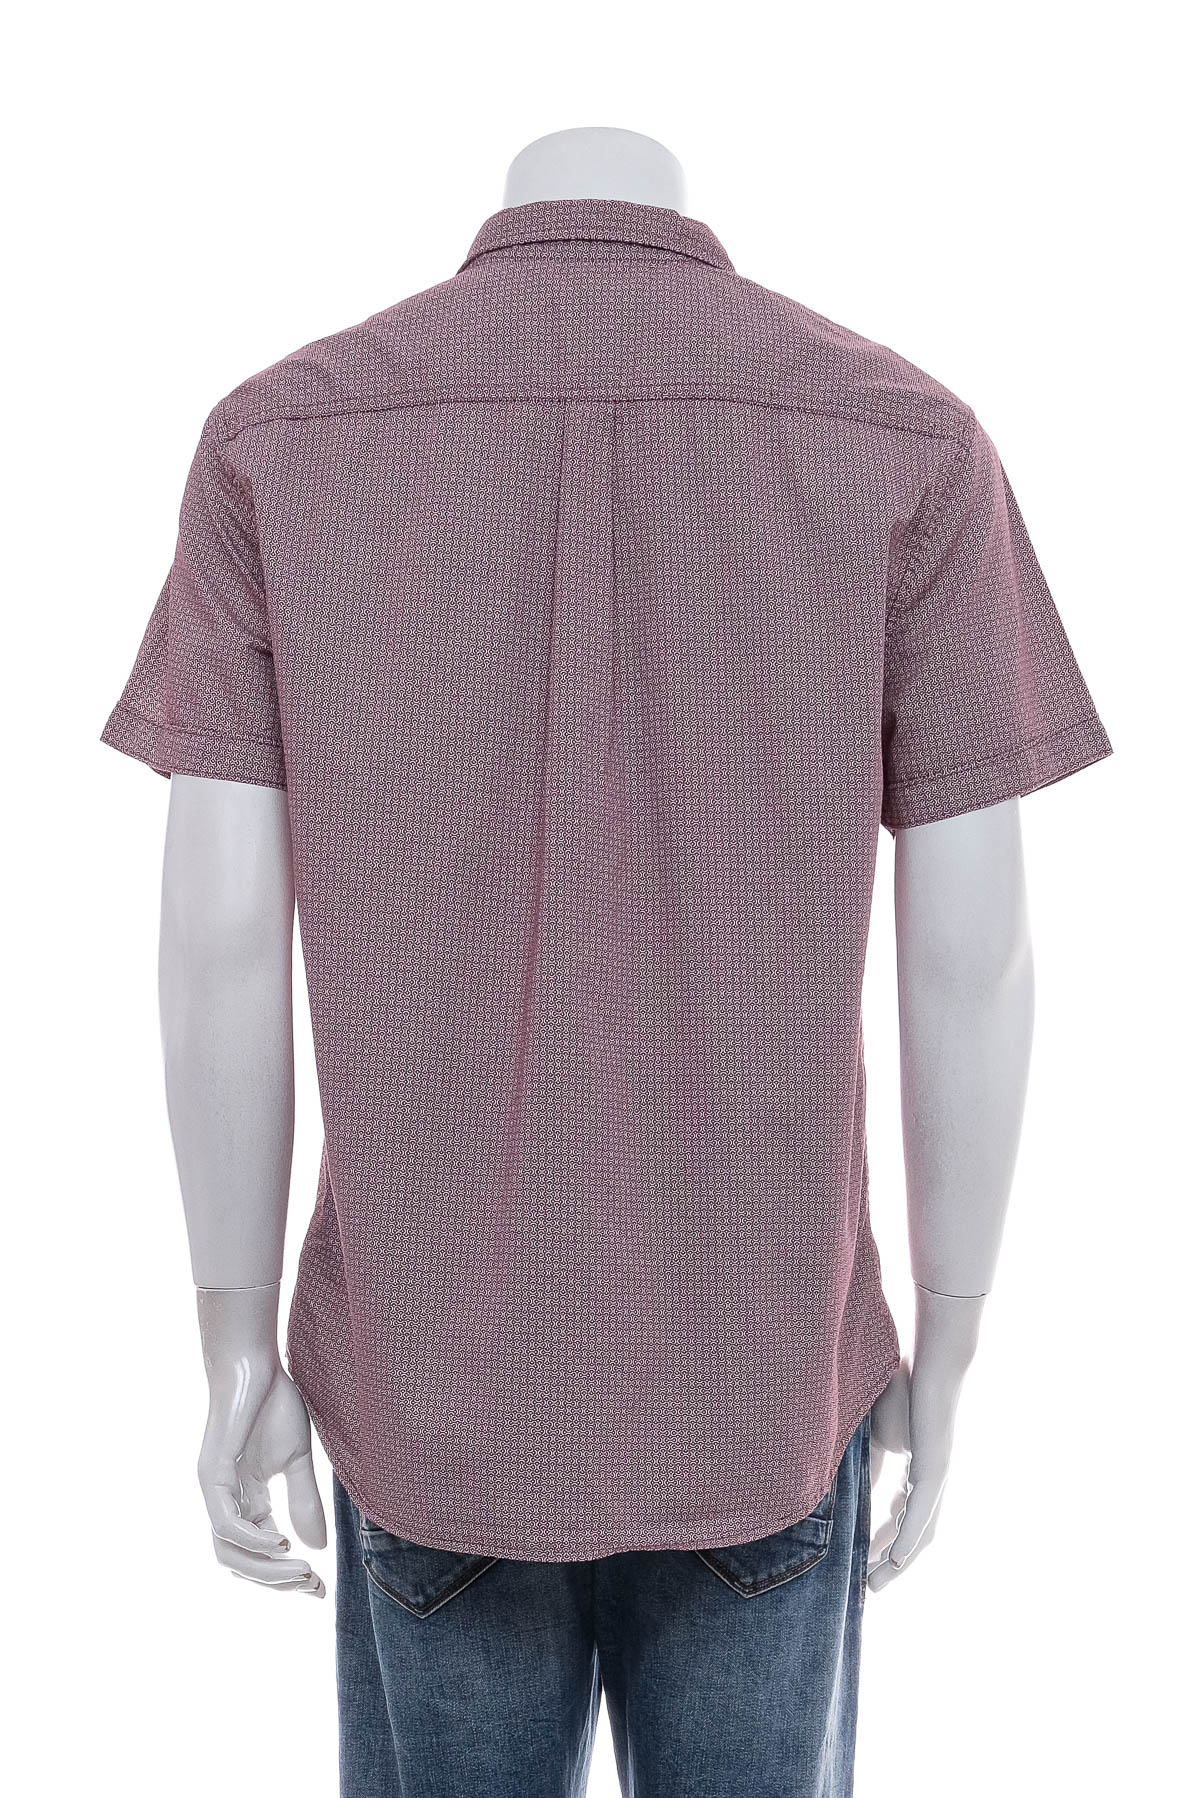 Ανδρικό πουκάμισο - UNDER ARMOUR - 1